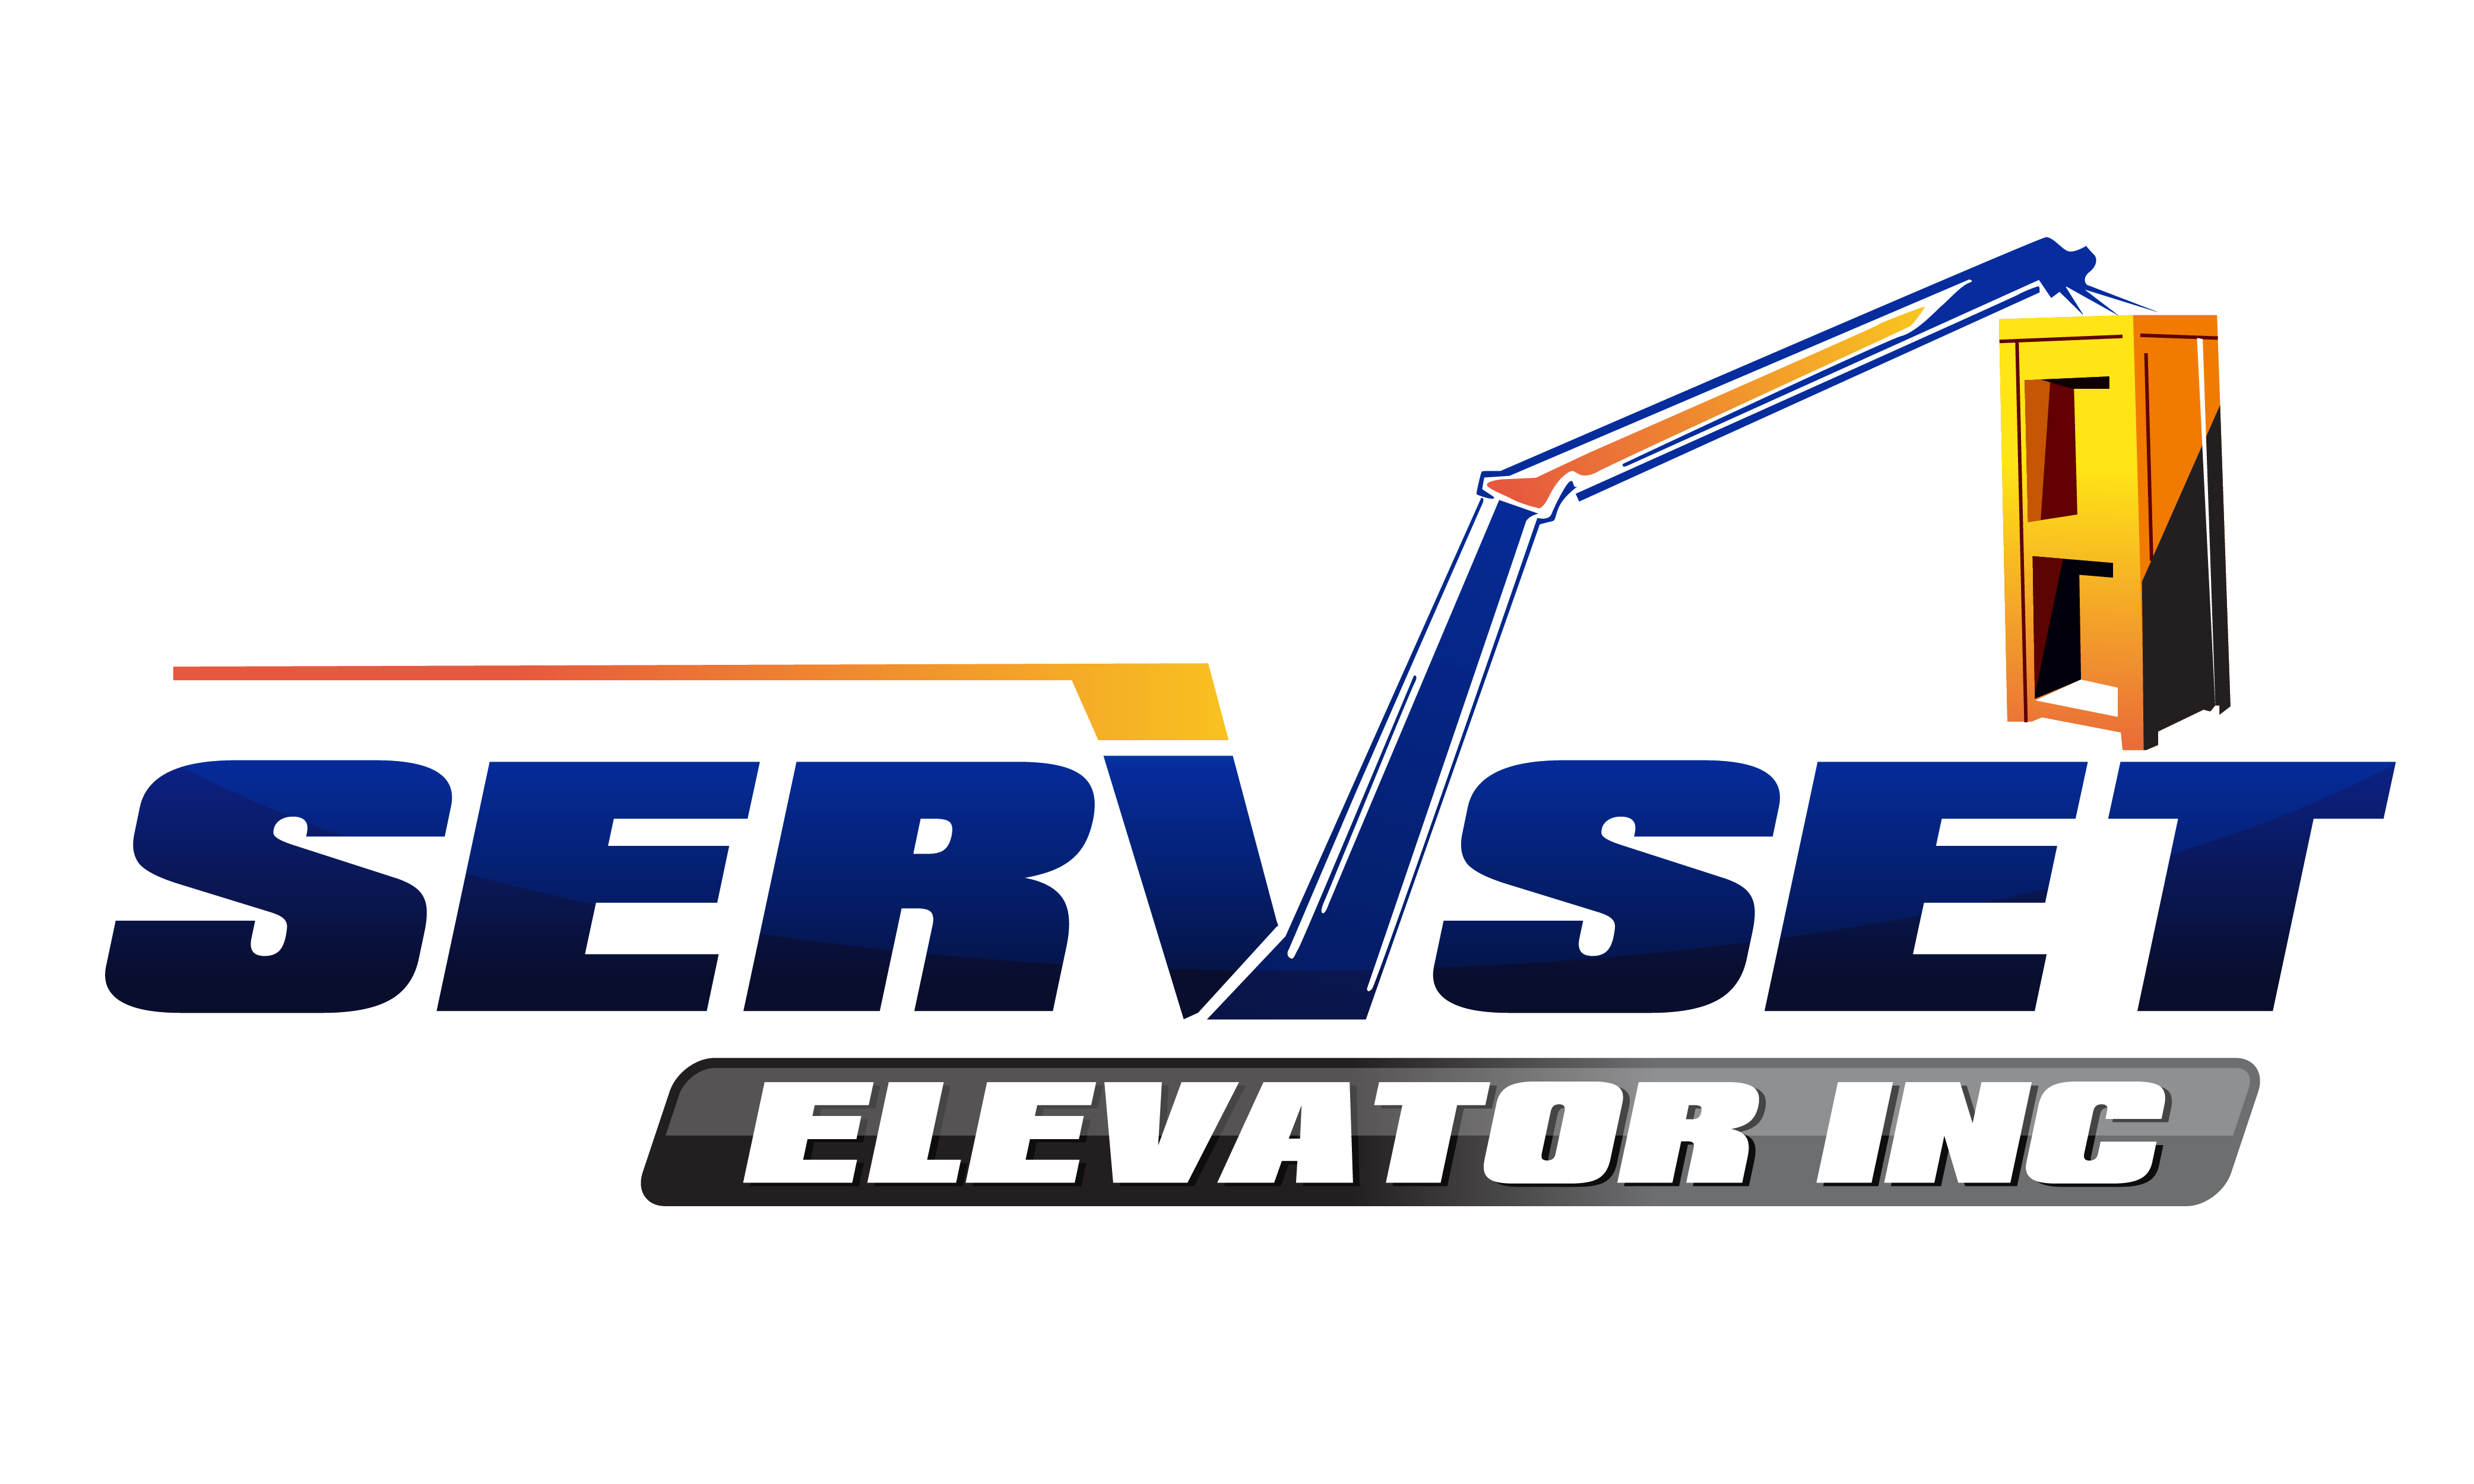 minetest elevator